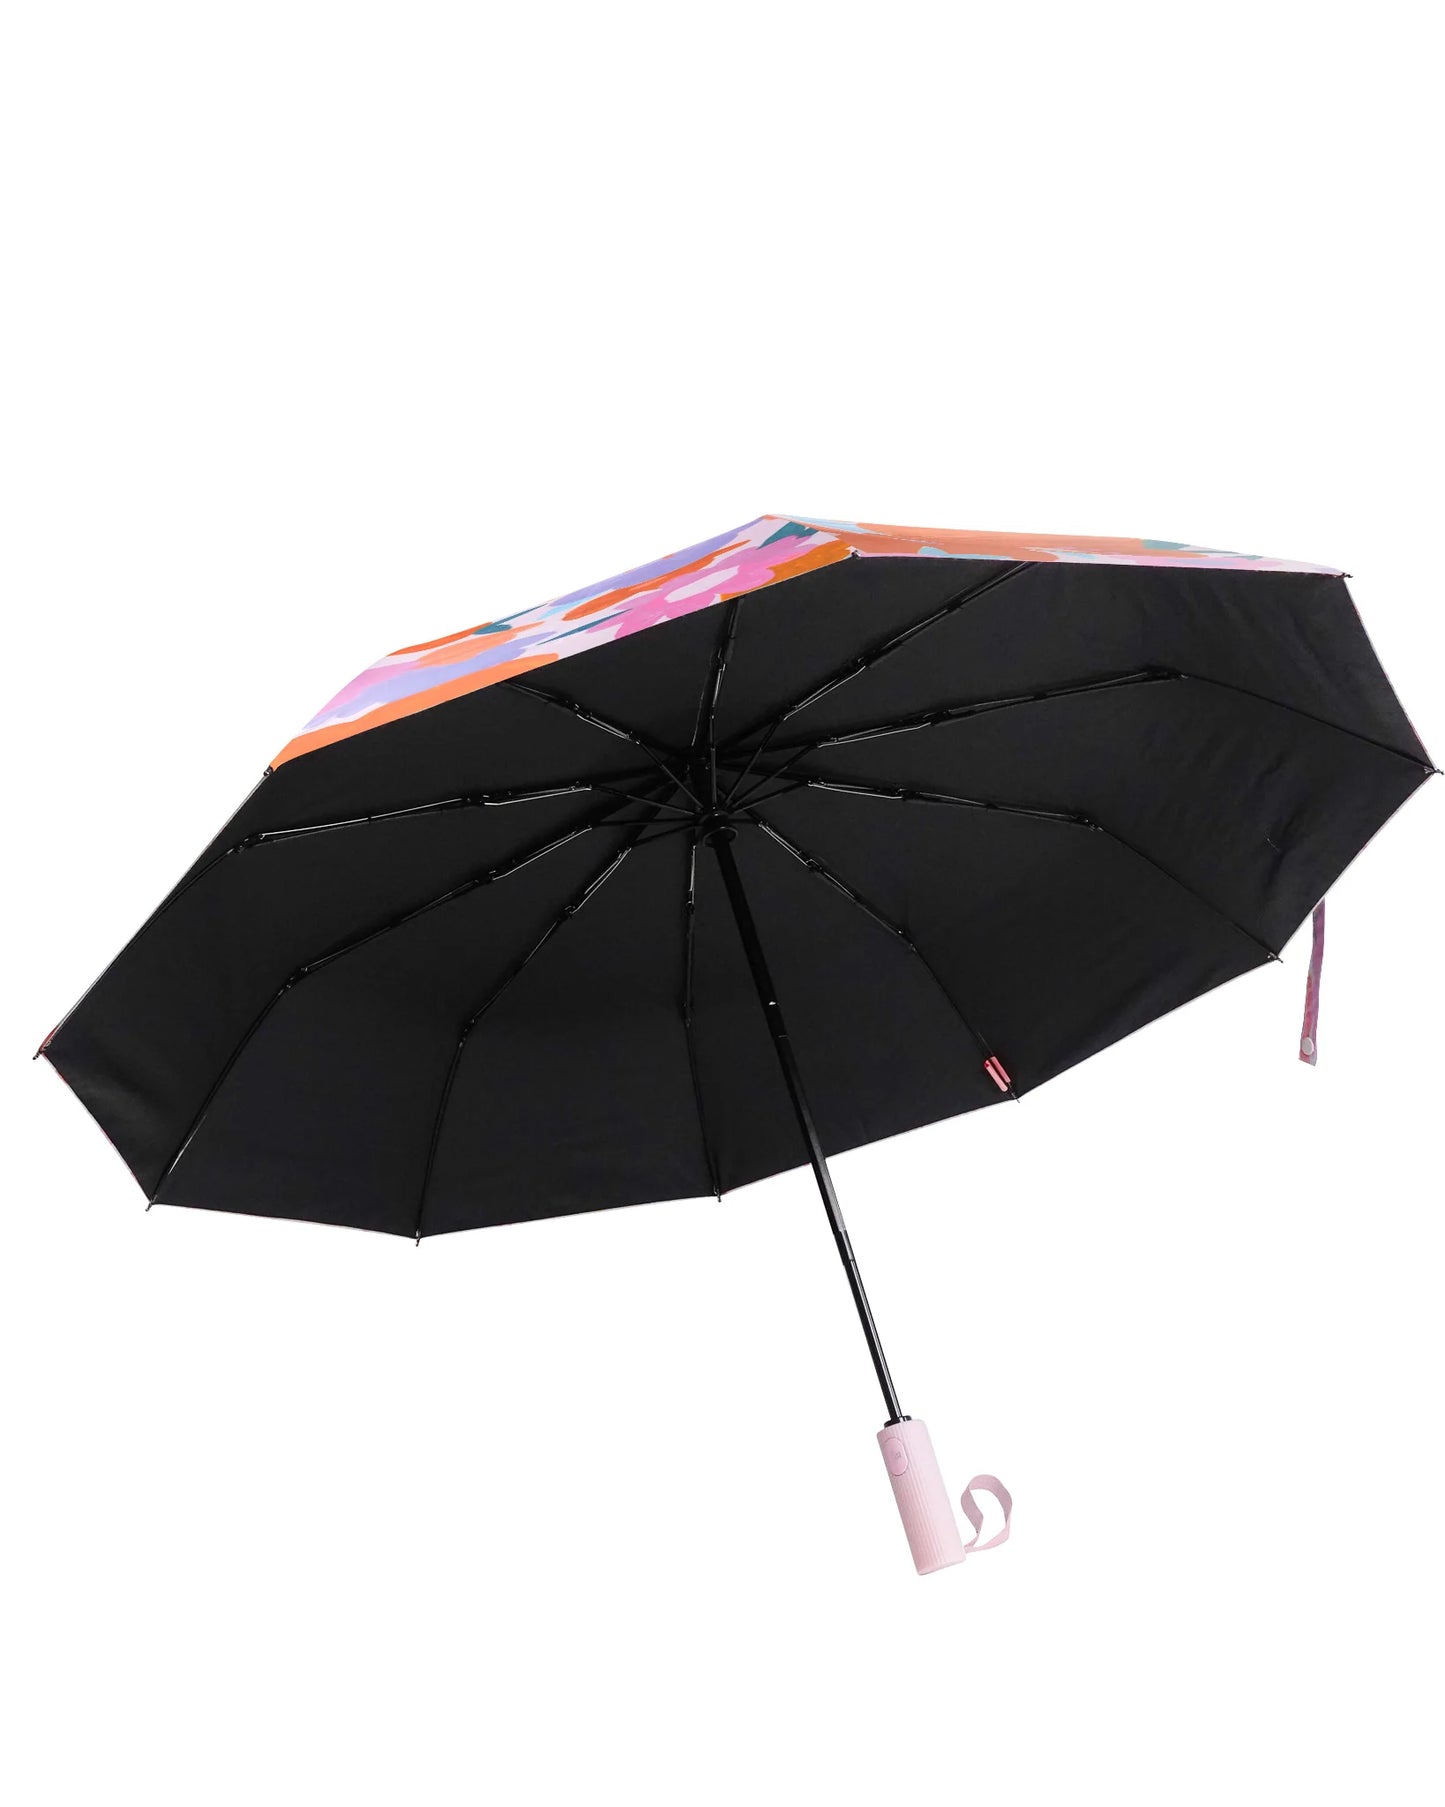 Sunkissed Umbrella